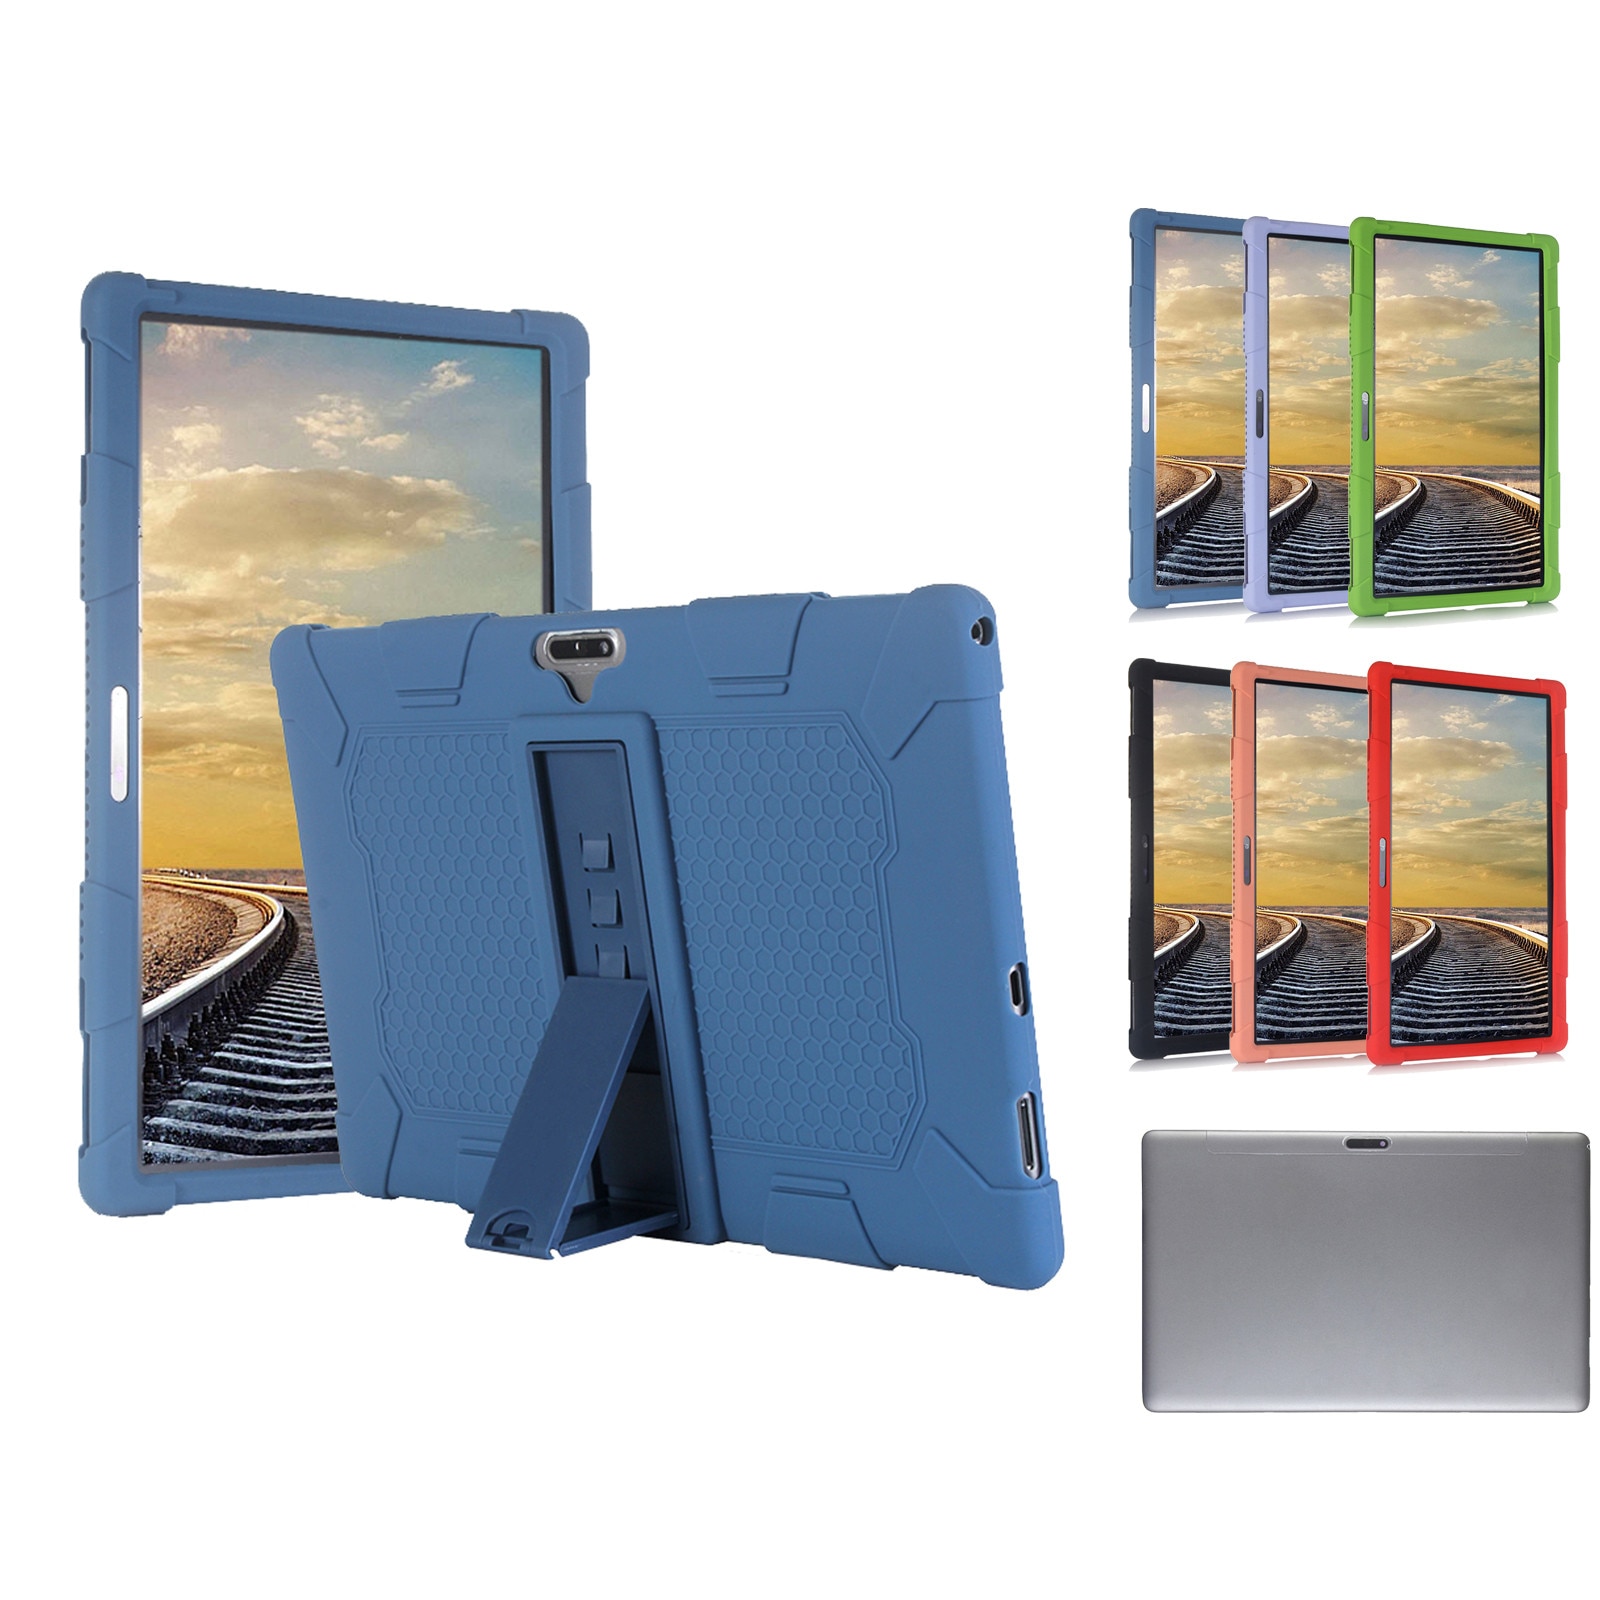 Universele Stand Siliconen Case Cover Beschermhoes Voor Teclast M16 X20L Voor Android Voyo I8 Pro 11.6 Tablet Voor Bmxc k20-s